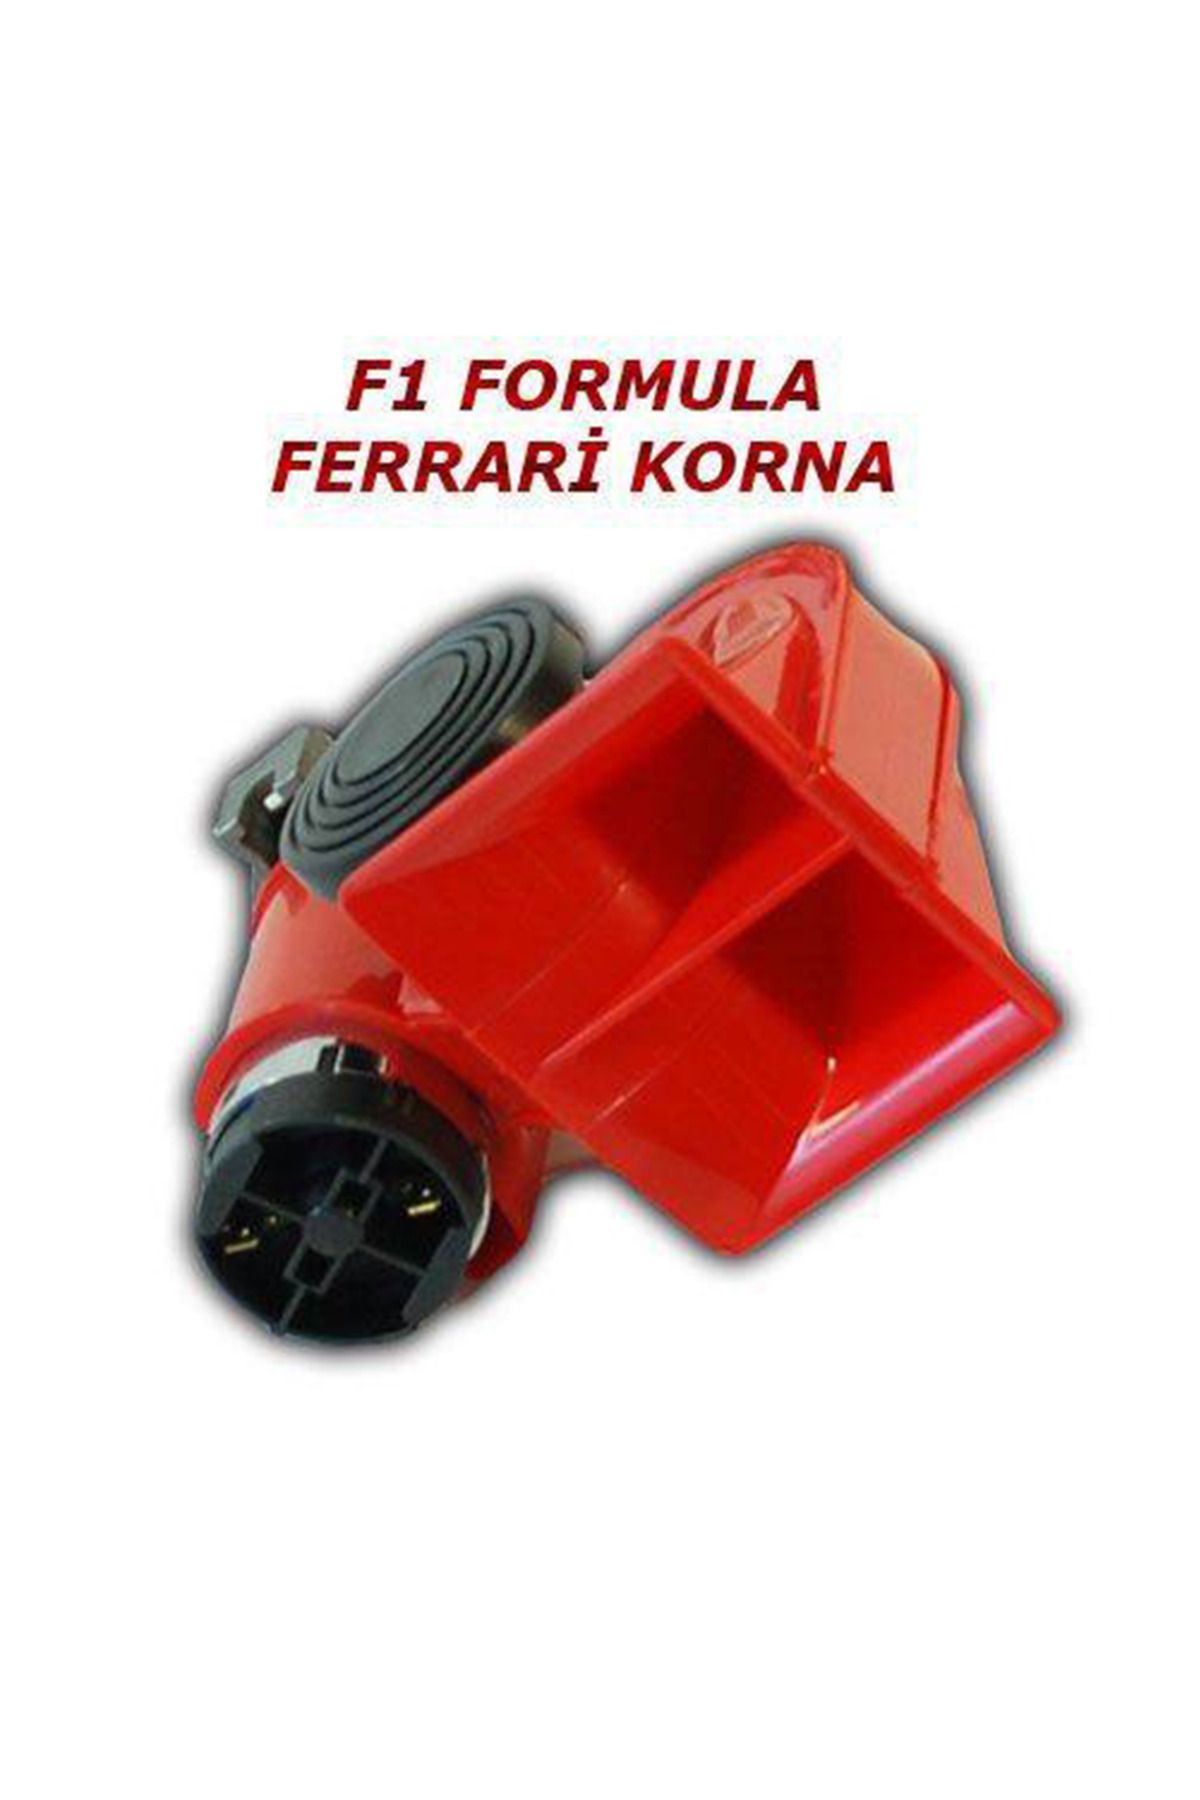 Universal Ferrari F1 Formula Havalı Korna Bosch Tipi 12 Volt